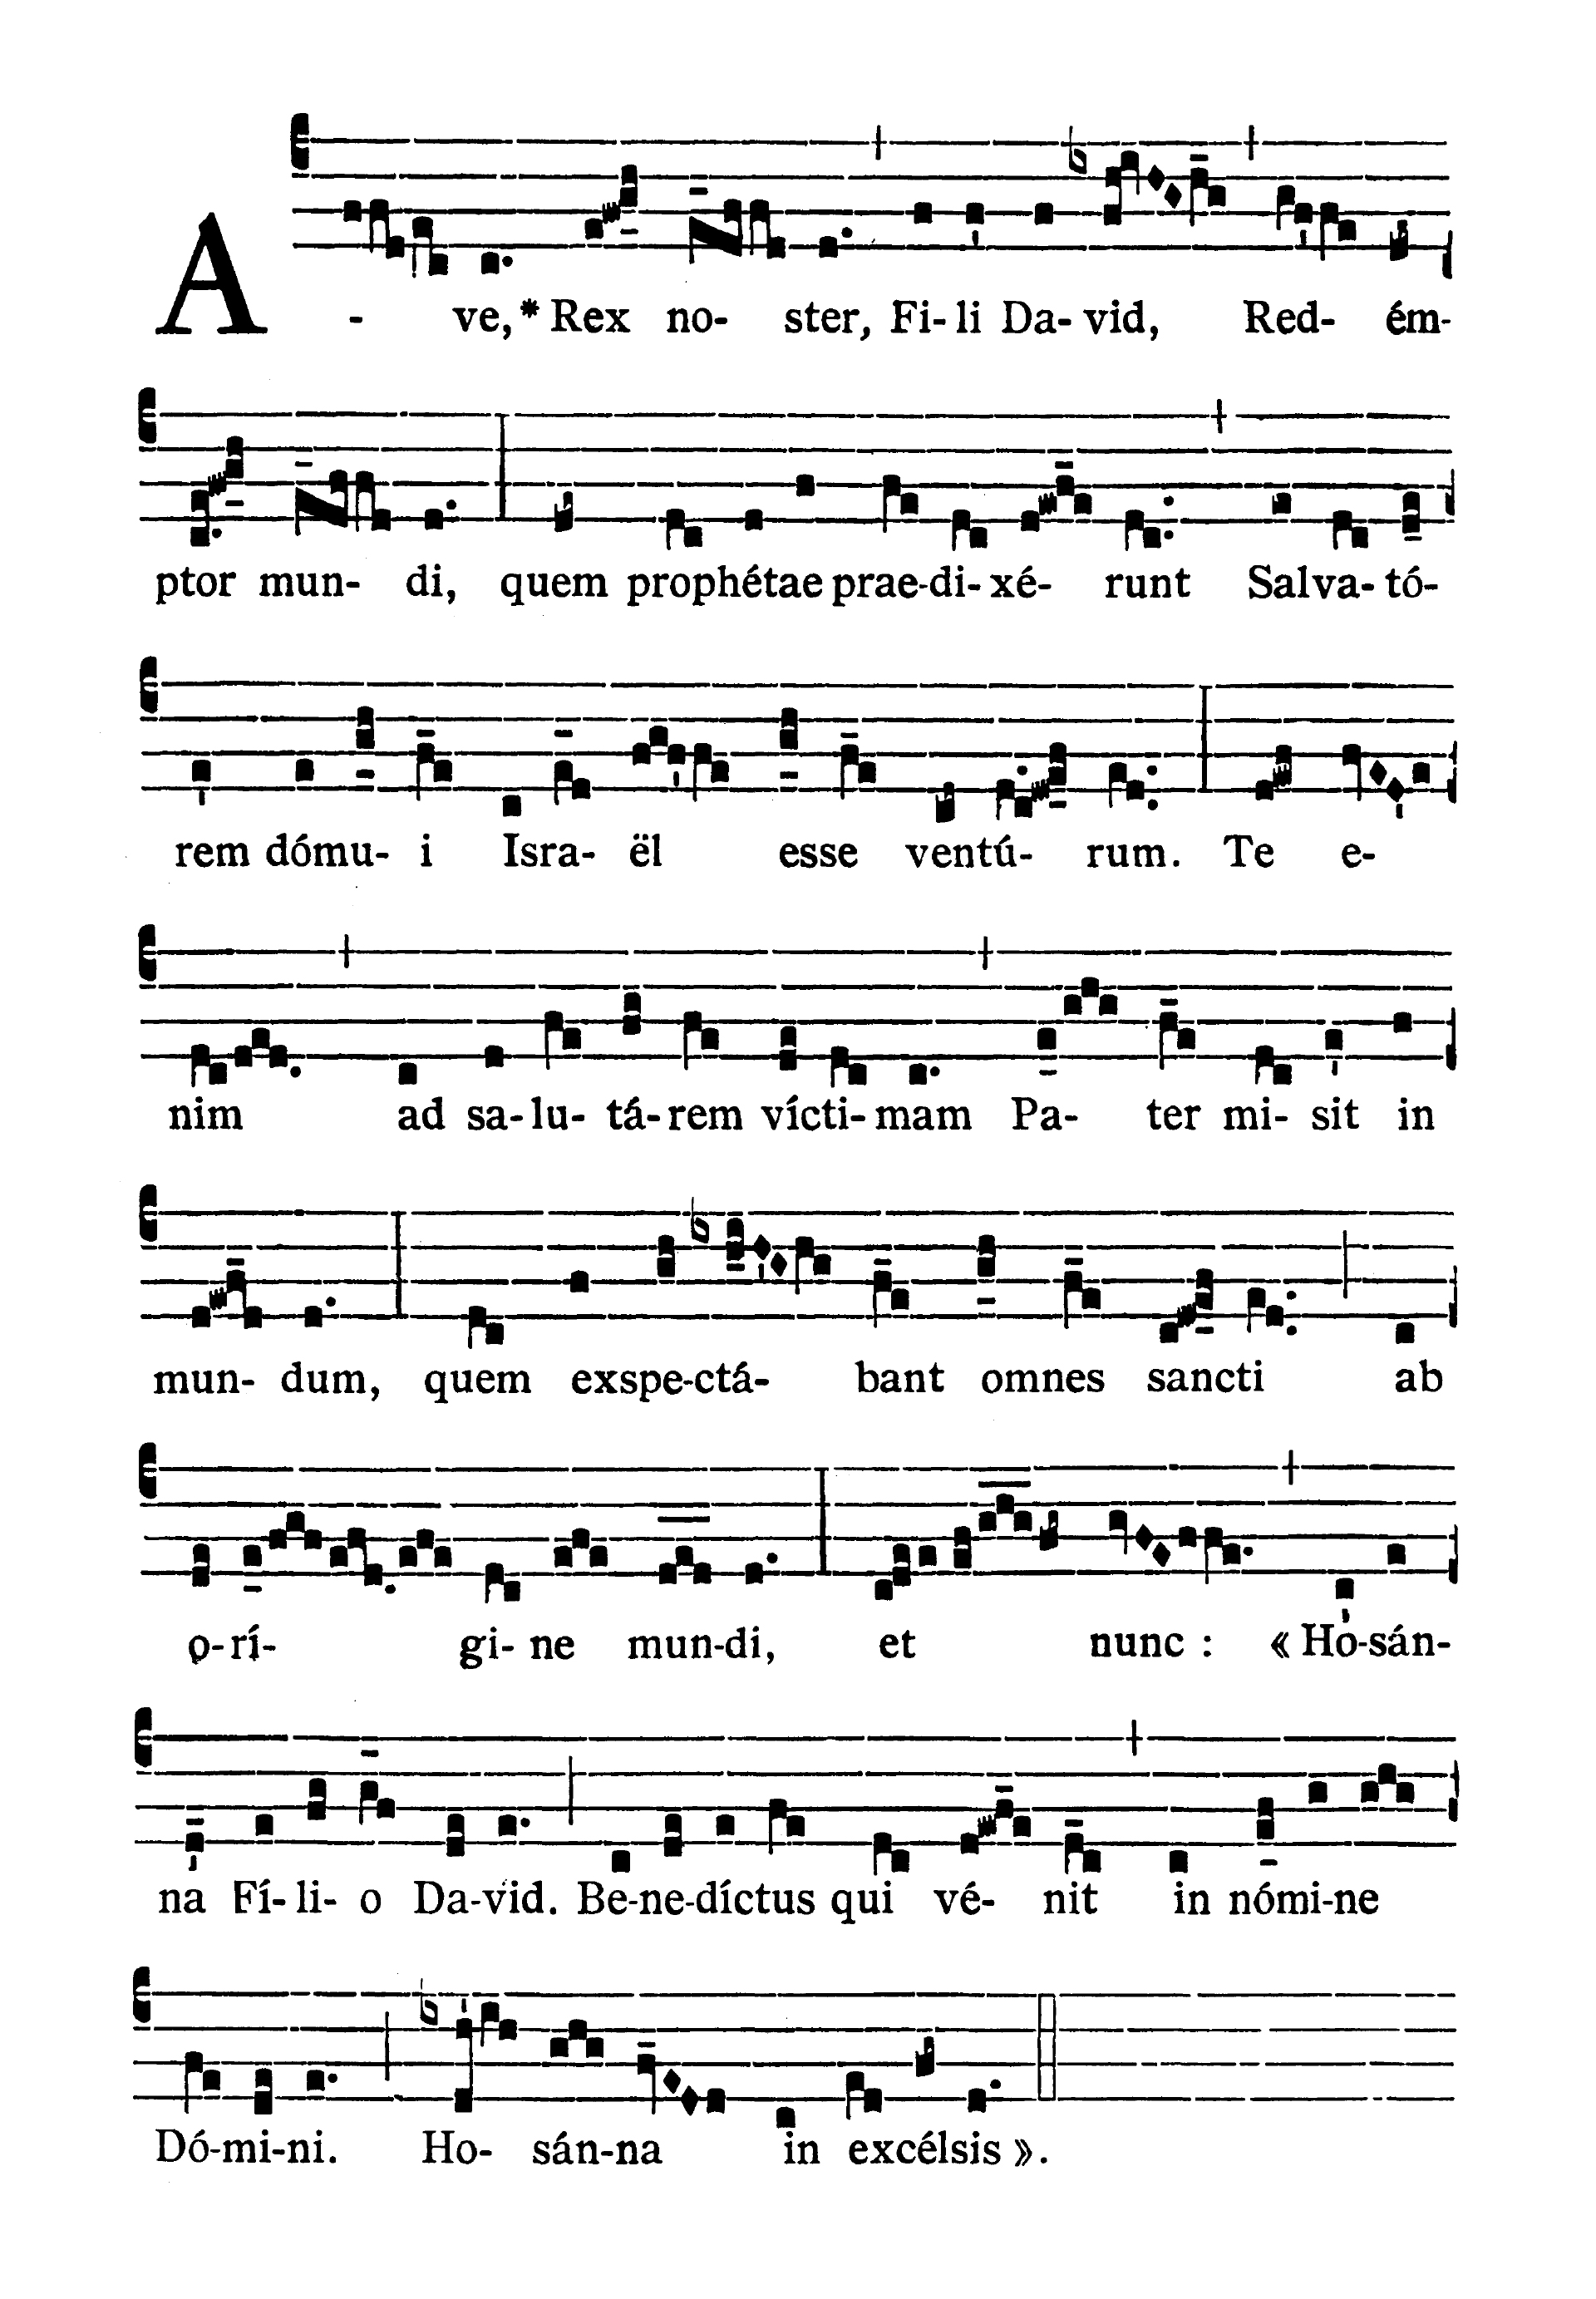 Dominica II in Passionis seu in Palmis (II Niedziela Męki Pańskiej lub Palmowa) - Antiphona (Ave Rex noster)